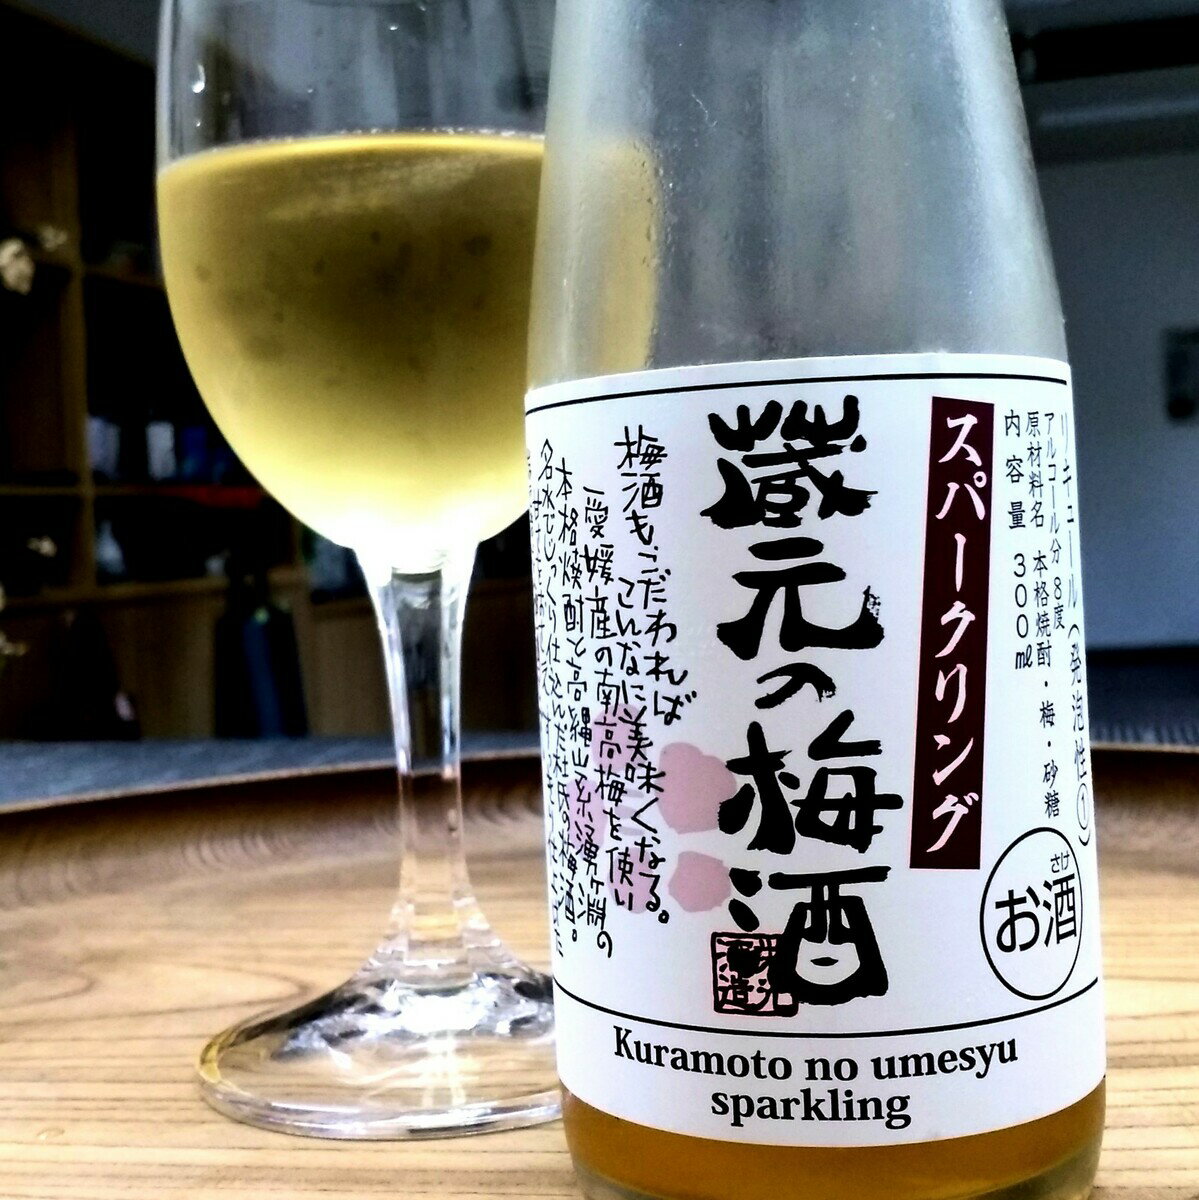 蔵元の梅酒スパークリング 300ml (栄光酒造 愛媛県 地酒 梅酒 リキュール 無添加)